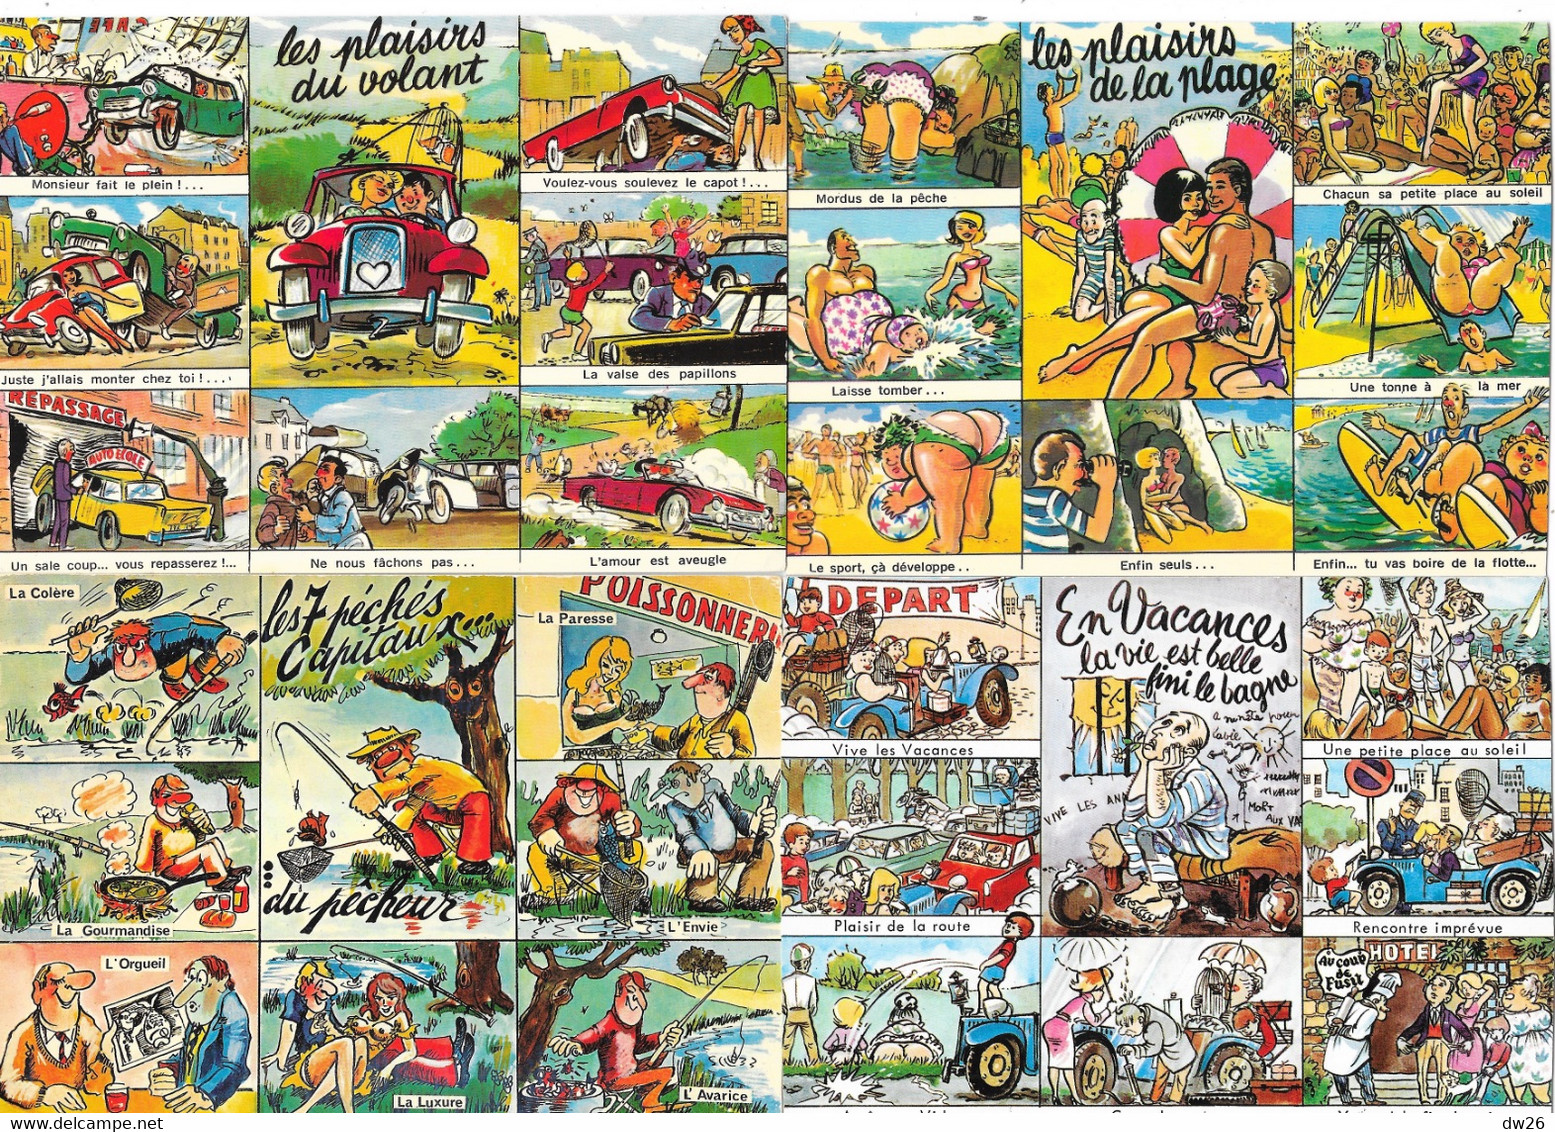 Lot n° 123 - Vrac de 60 cartes humoristiques: Humour, illustrations, photos anciennes et récentes